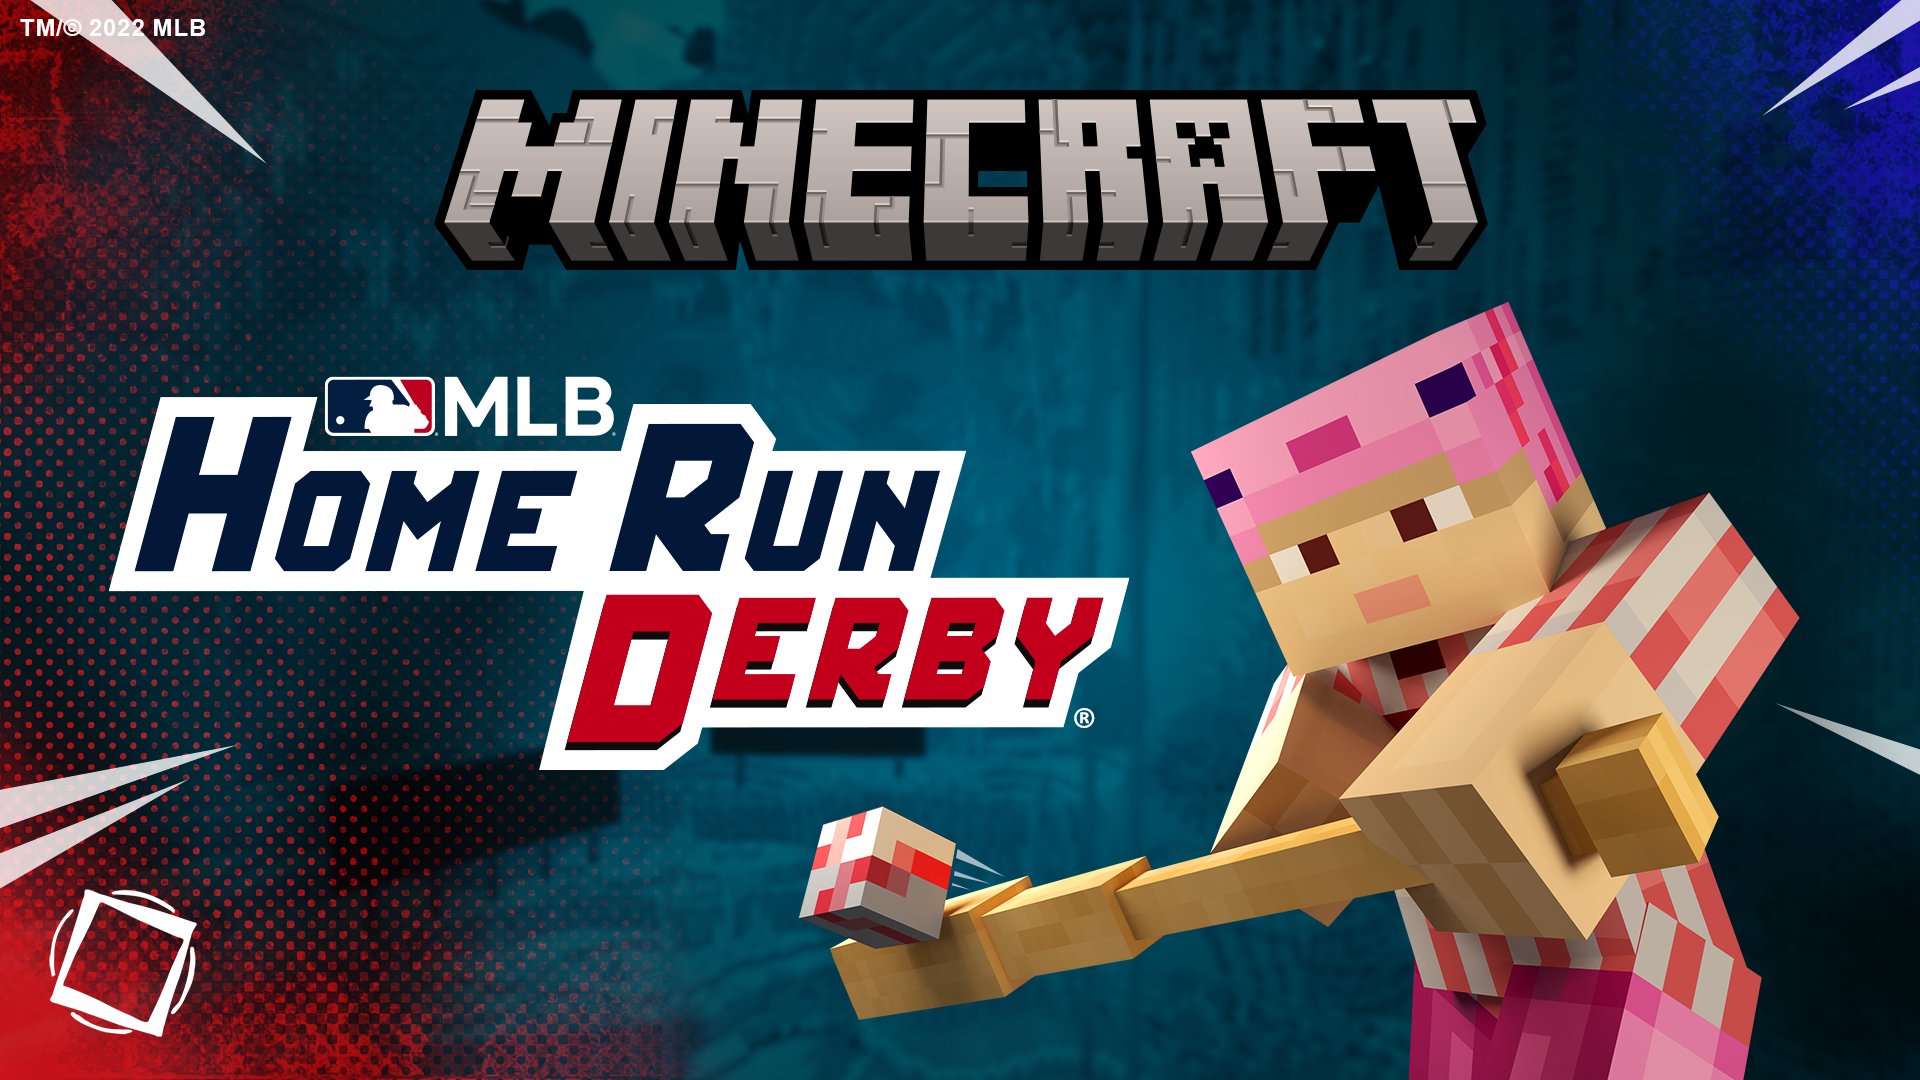 Minecraft MLB Home Run Derby